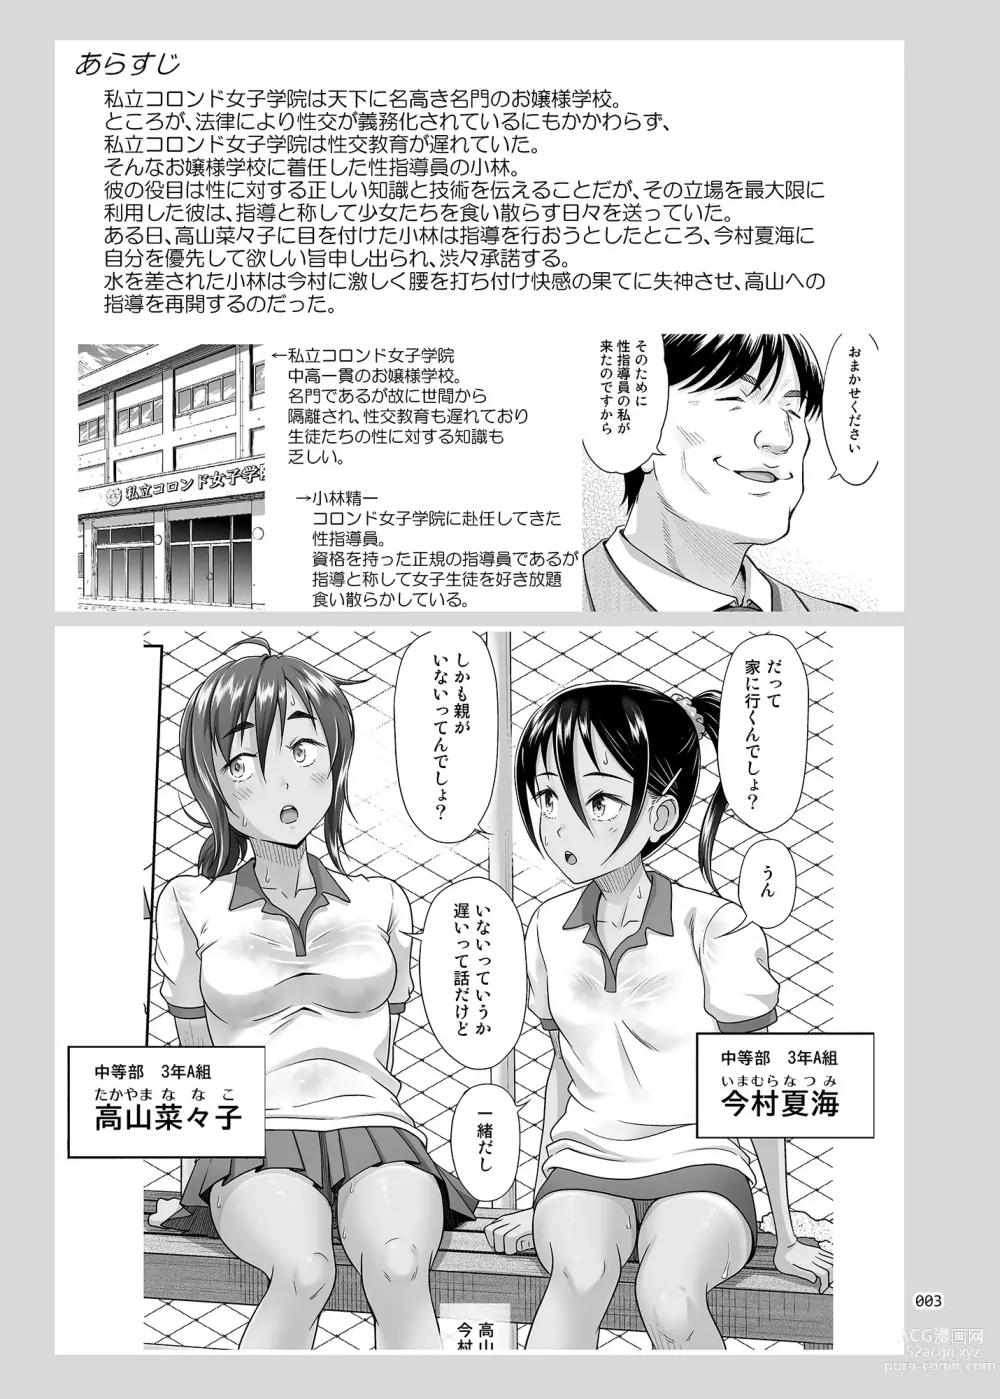 Page 3 of doujinshi Seishidouin no Oshigoto 4 Kohen Rippana Benki ni Sodatta node Daimanzoku de Shidou wo Oeta